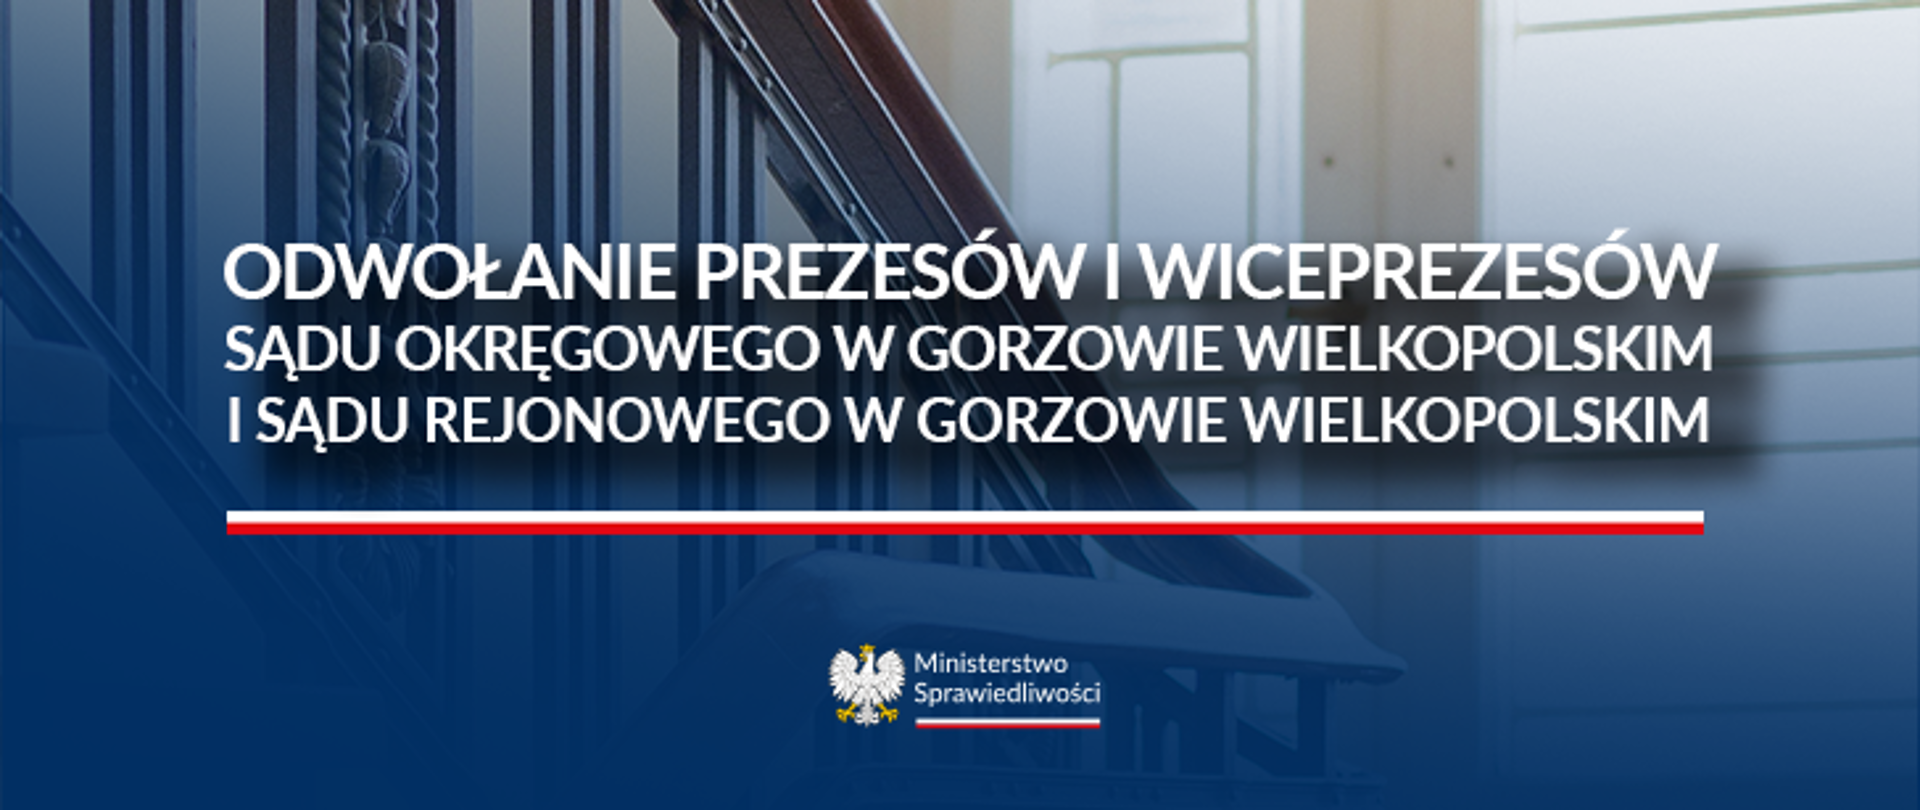 Odwołanie prezesów i wiceprezesów SO oraz SR w Gorzowie Wielkopolskim 